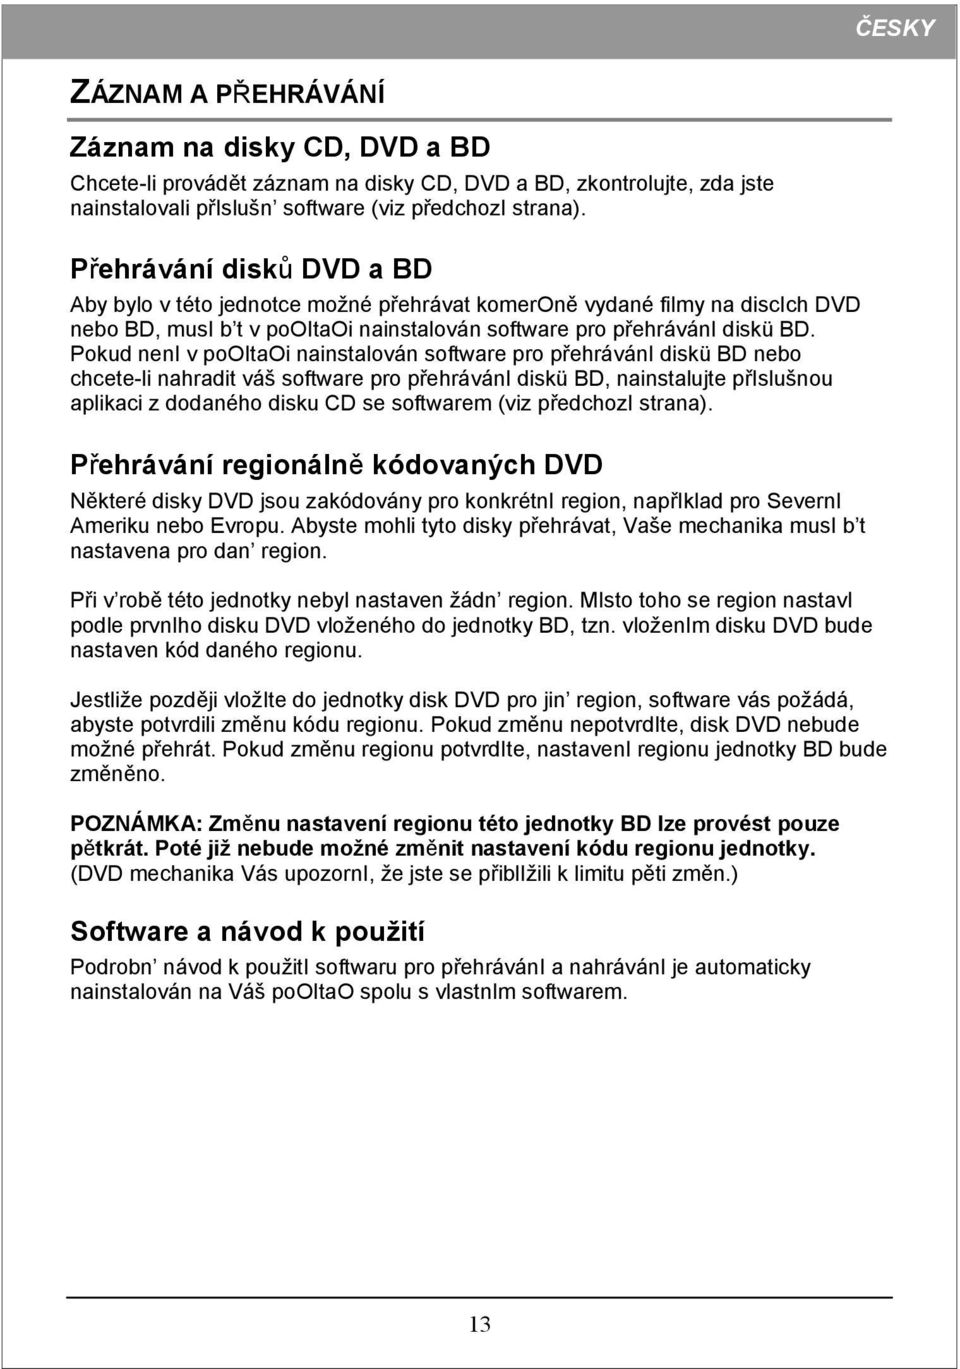 Pokud neni v pooitaoi nainstalován software pro přehráváni diskü BD nebo chcete-li nahradit váš software pro přehráváni diskü BD, nainstalujte přislušnou aplikaci z dodaného disku CD se softwarem